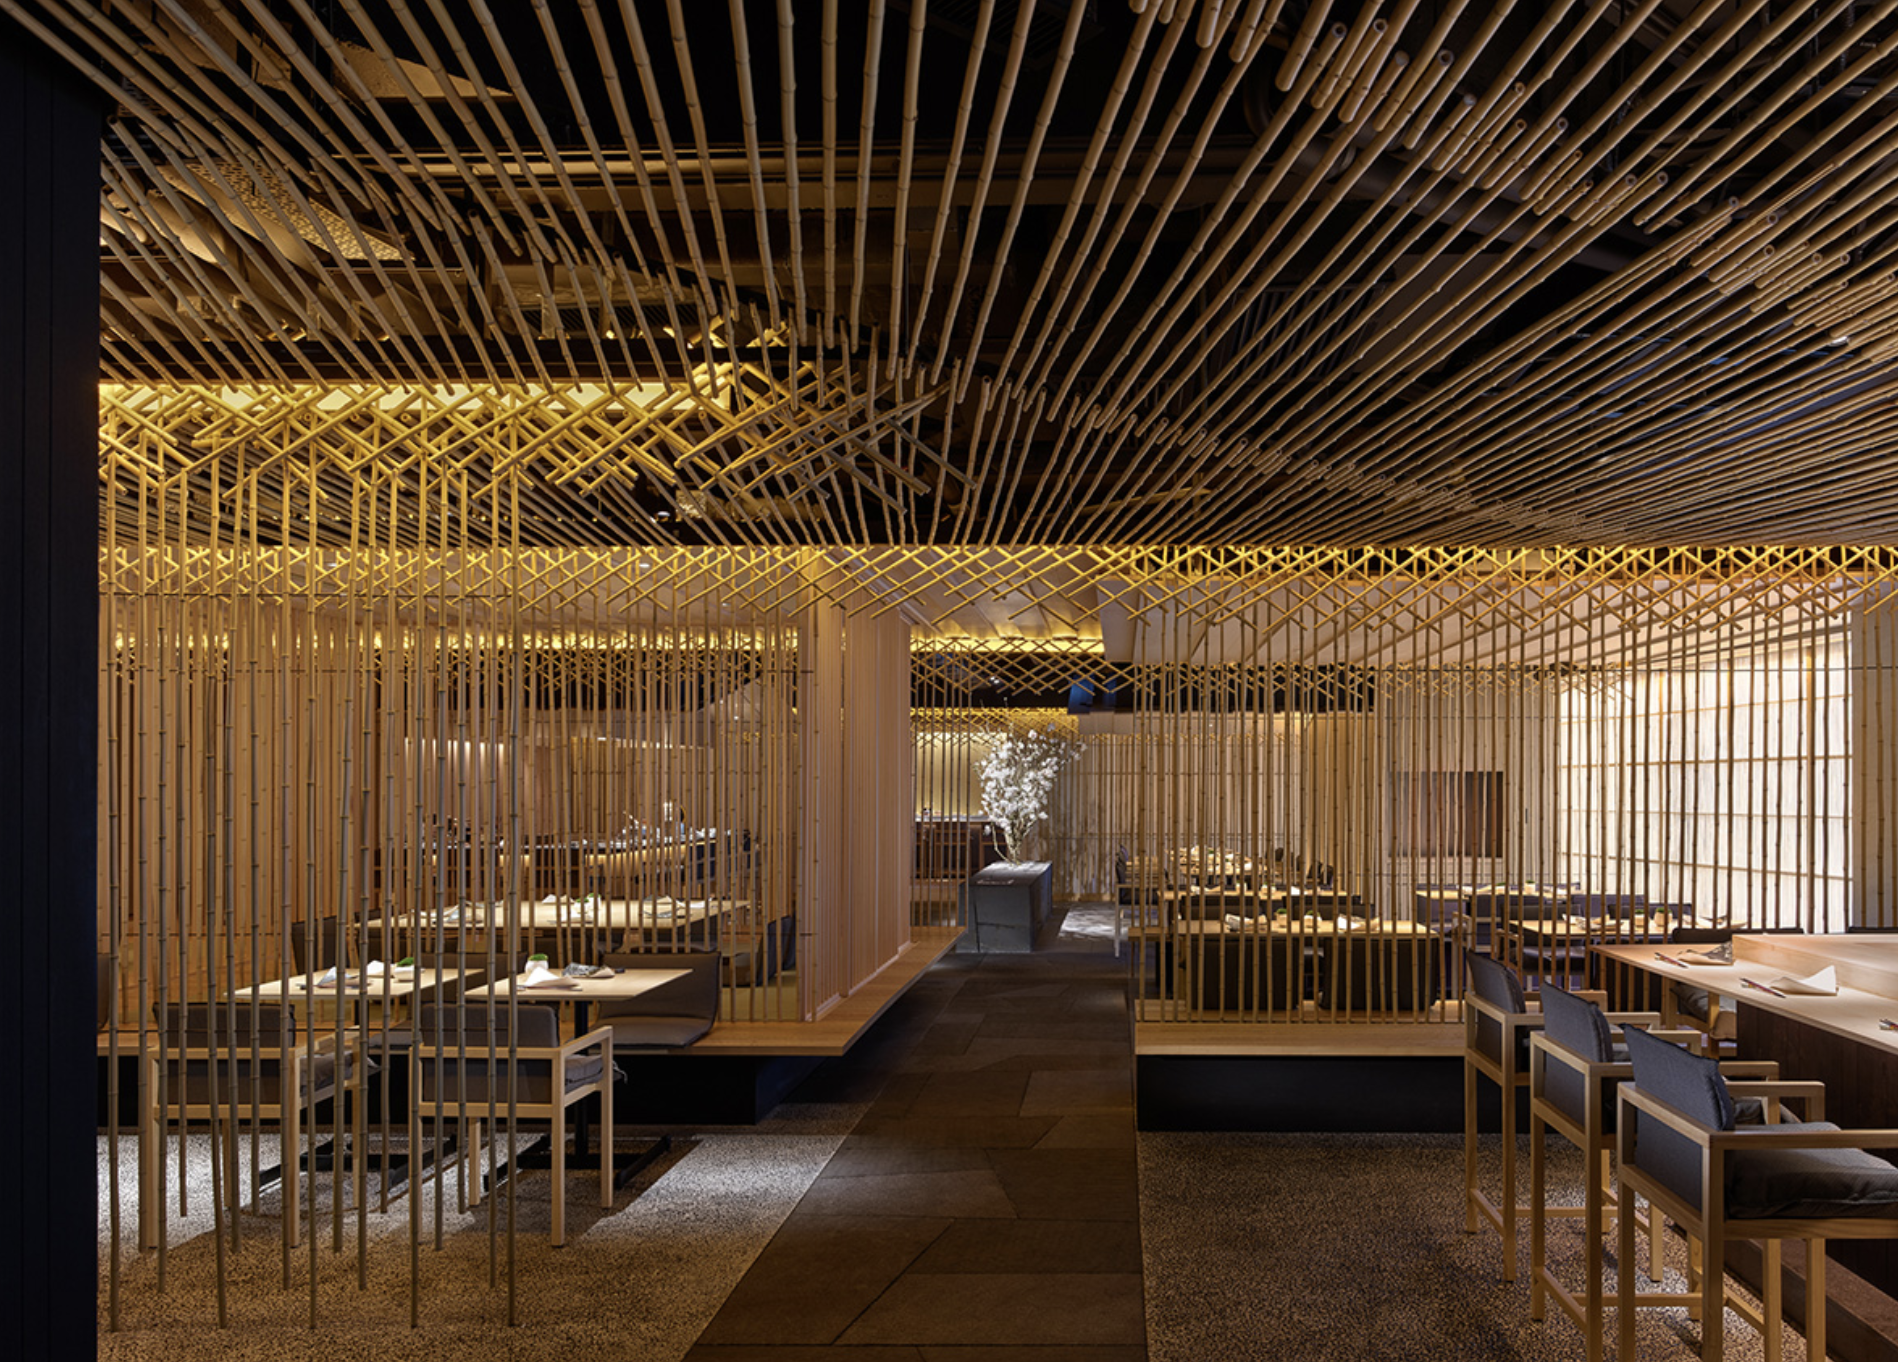 Floresta de bambu é inspiração para novo restaurante em Hong Kong